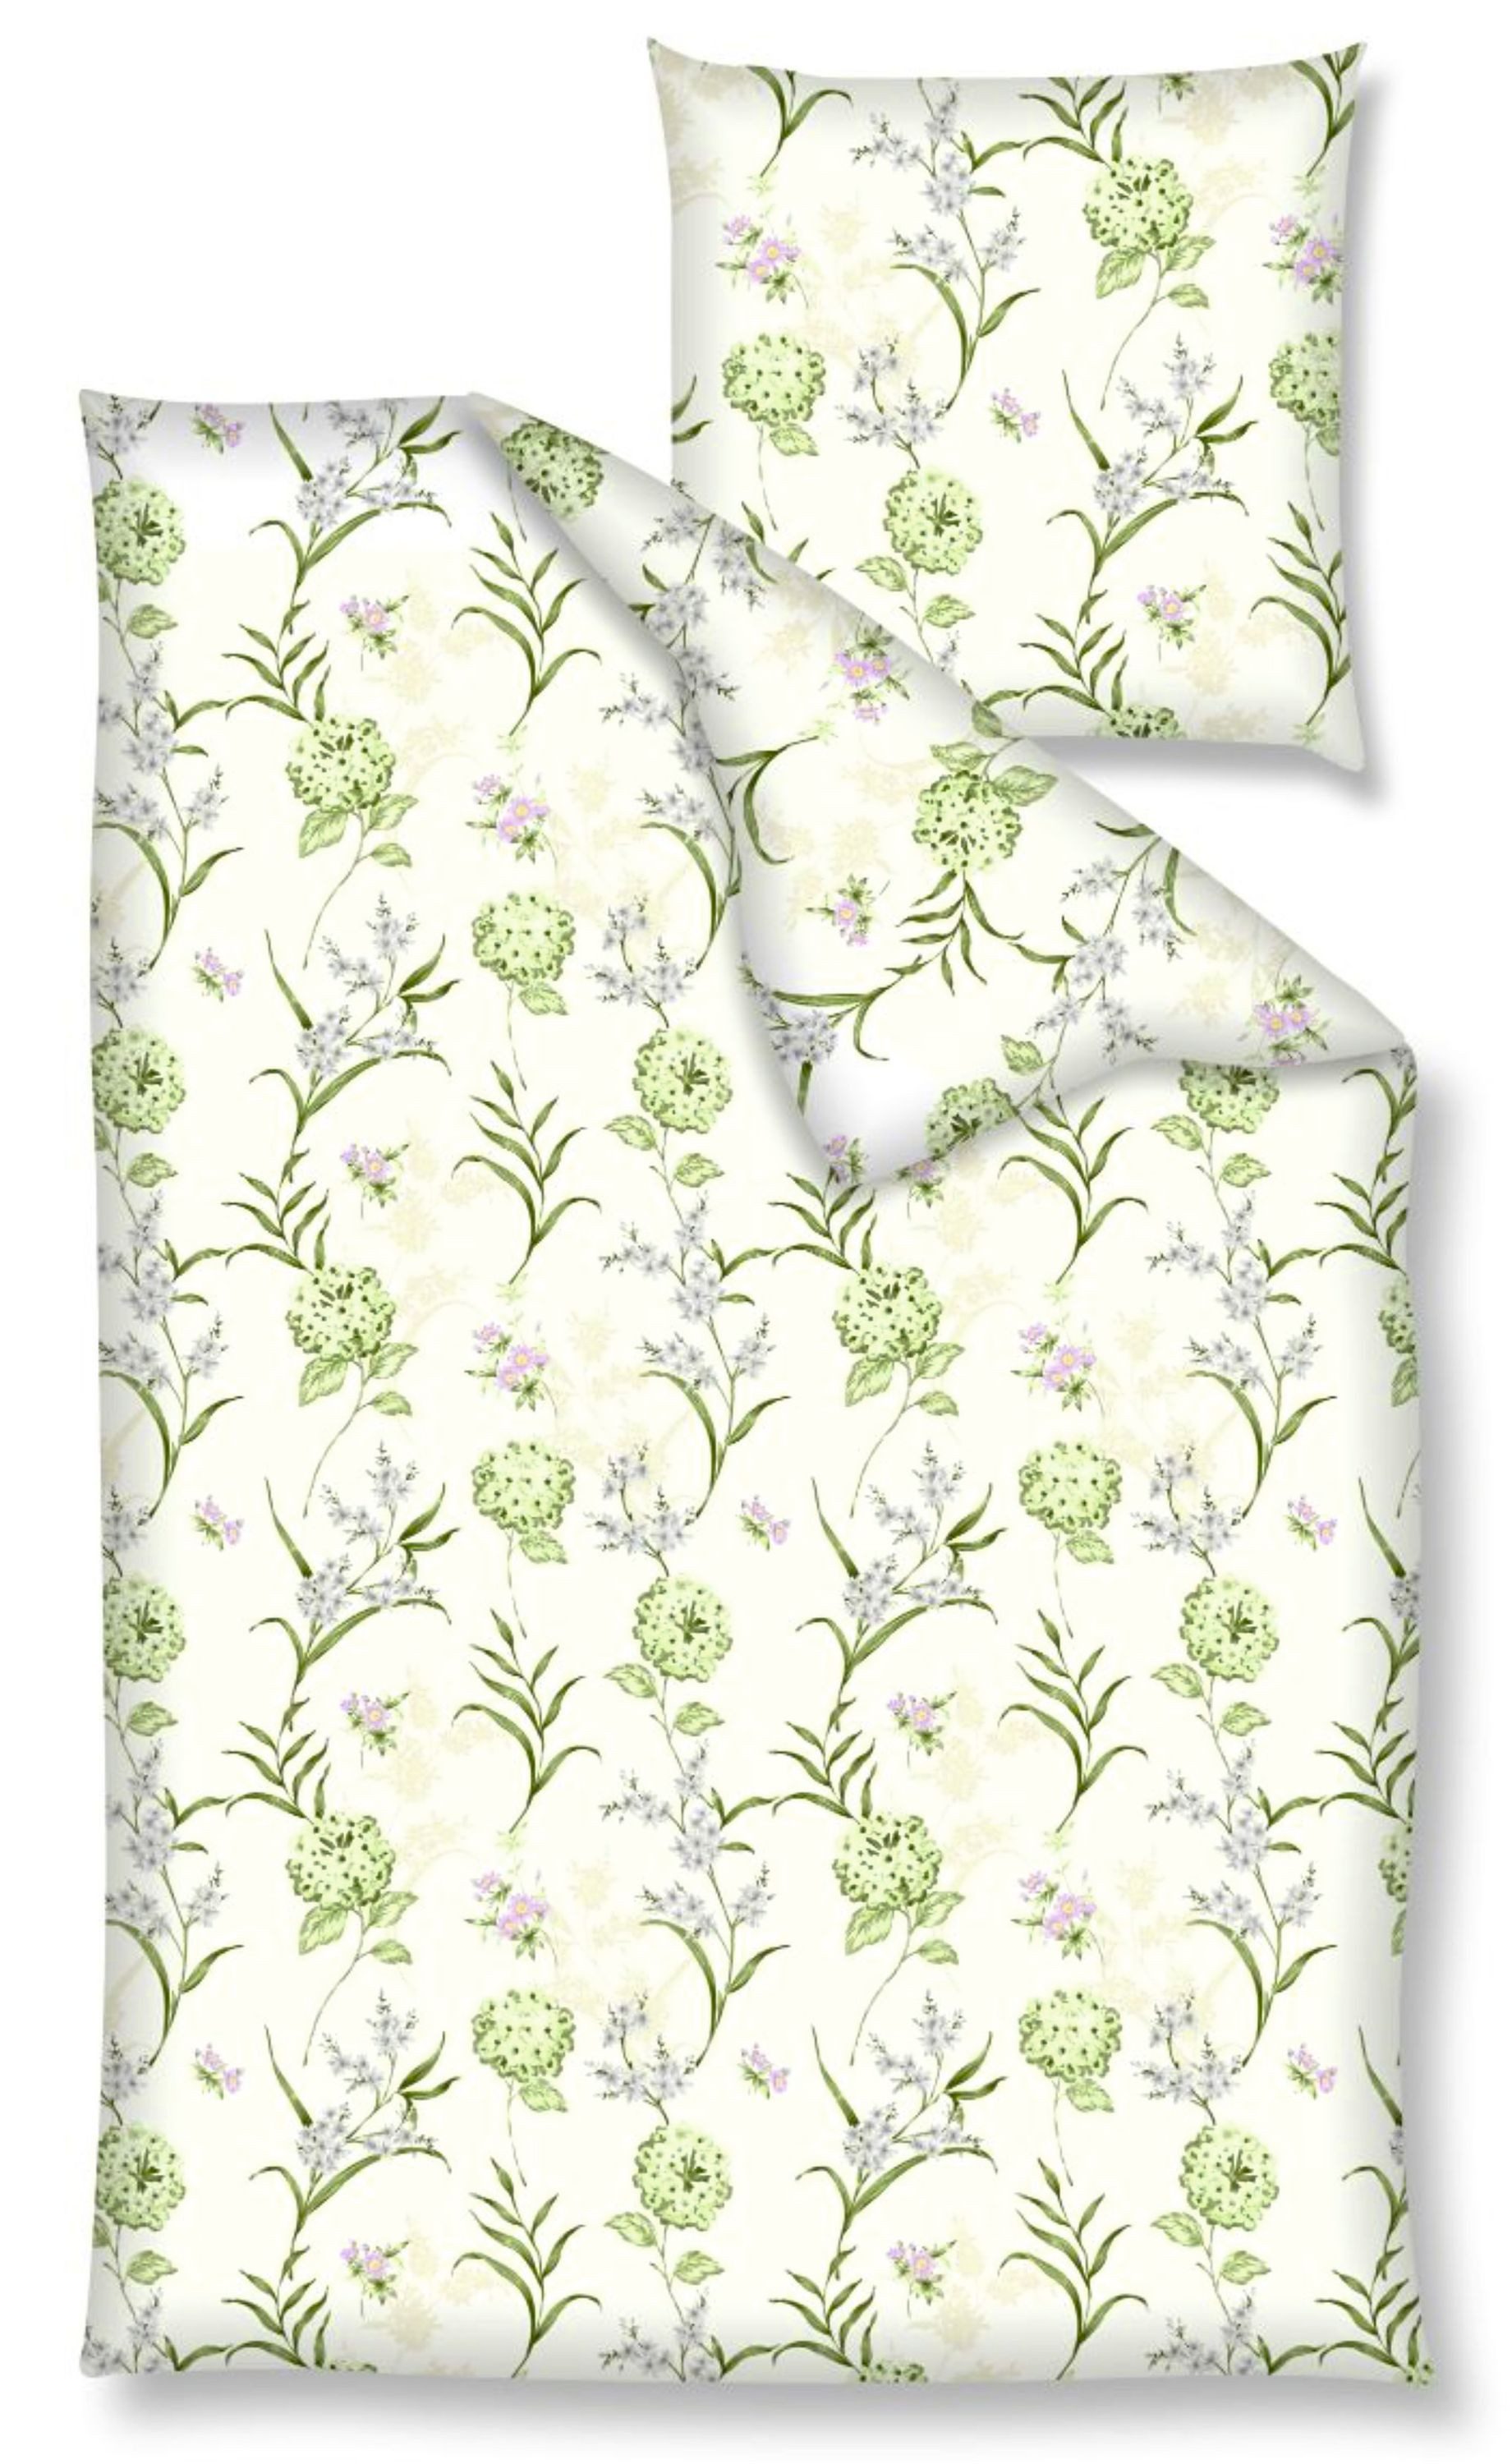 Bettwäsche Baumwolle, Traumschloss, Renforcé, 2 teilig, Blumenwiese, grün, weißer Hintergrund